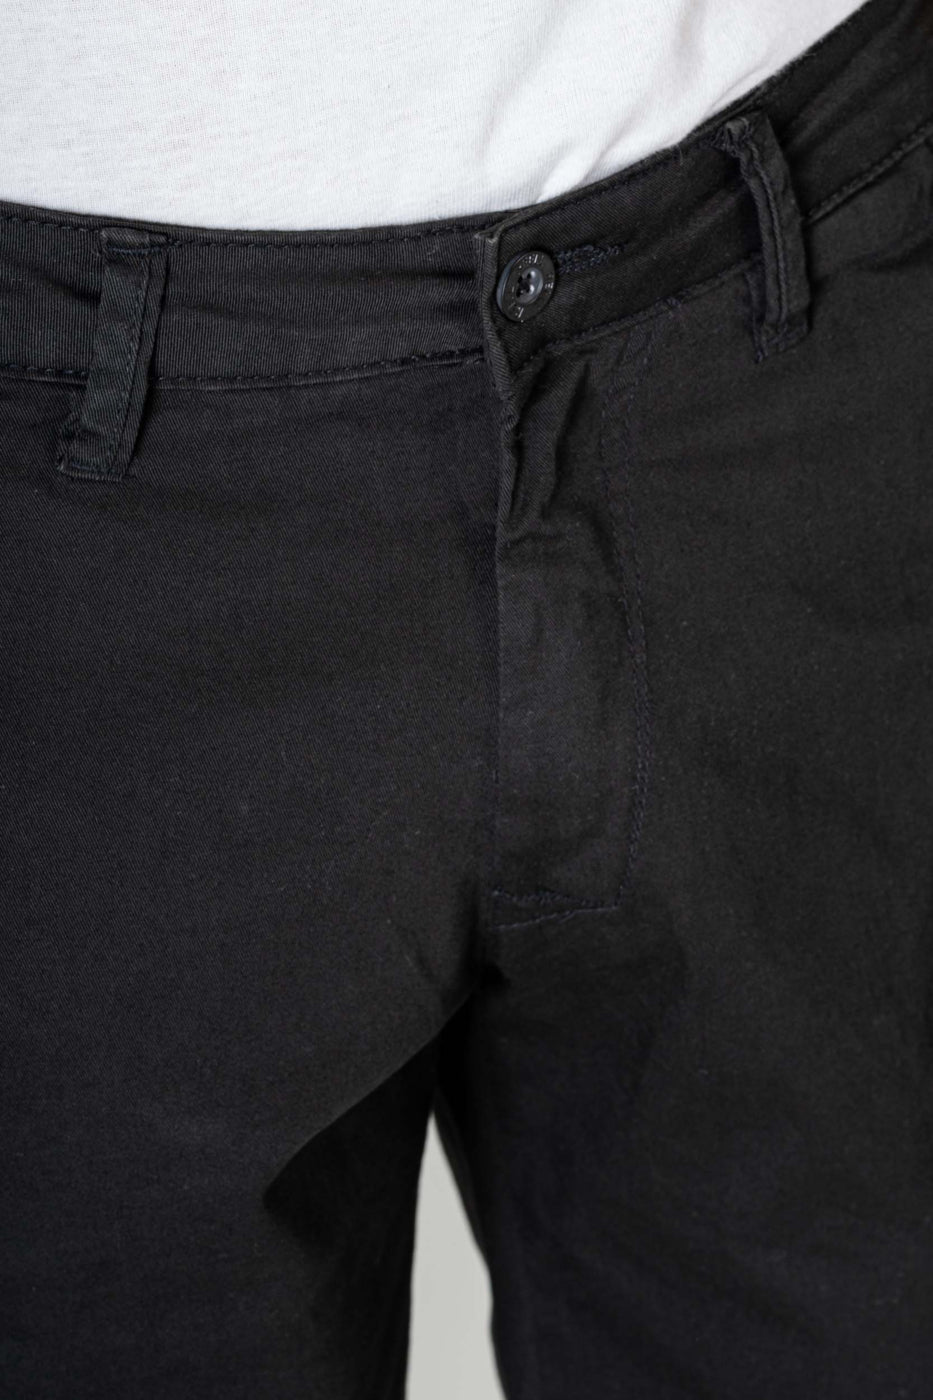 Flex Grip Chino Shorts, black